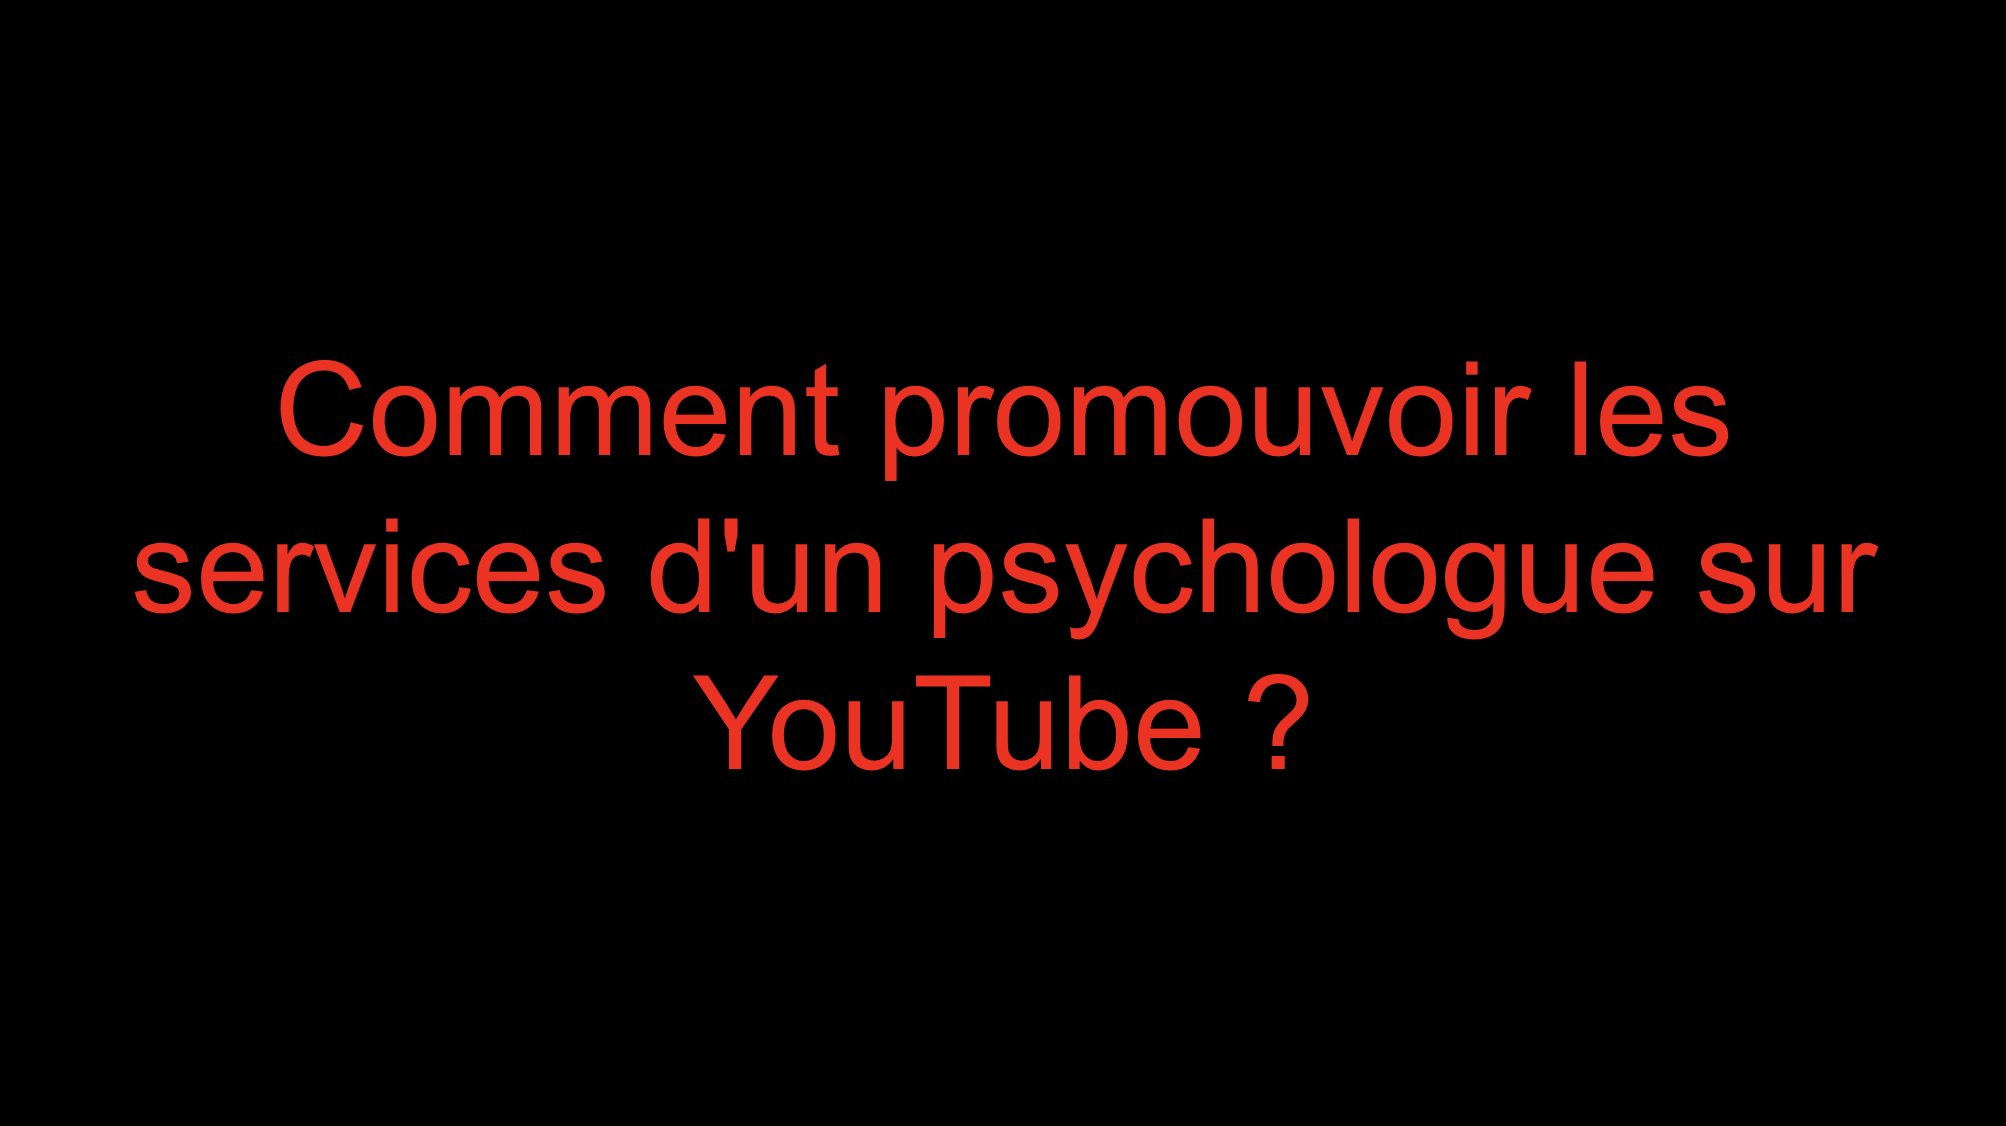 You are currently viewing Comment promouvoir les services d’un psychologue sur YouTube ?